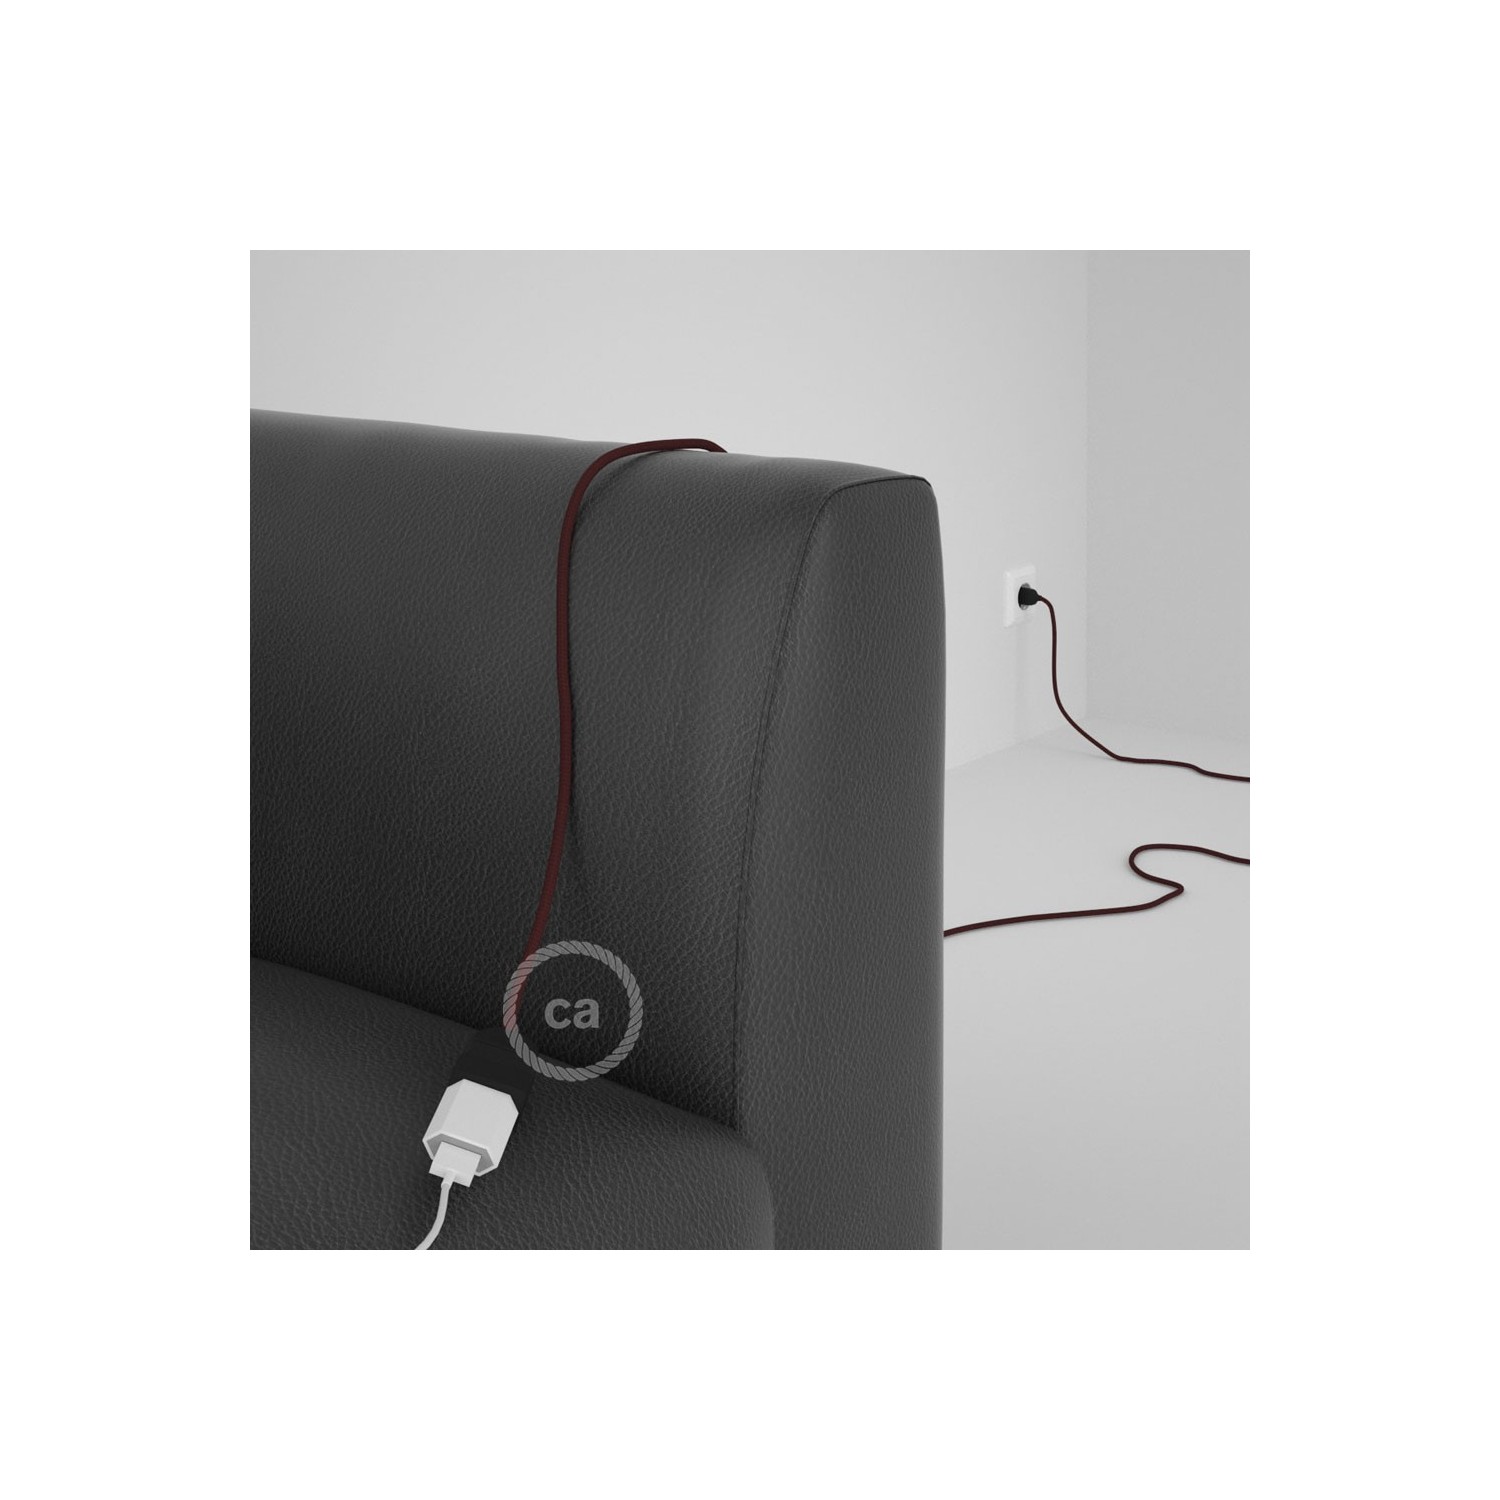 Rallonge électrique avec câble textile RM19 Effet Soie Bordeaux 2P 10A Made in Italy.